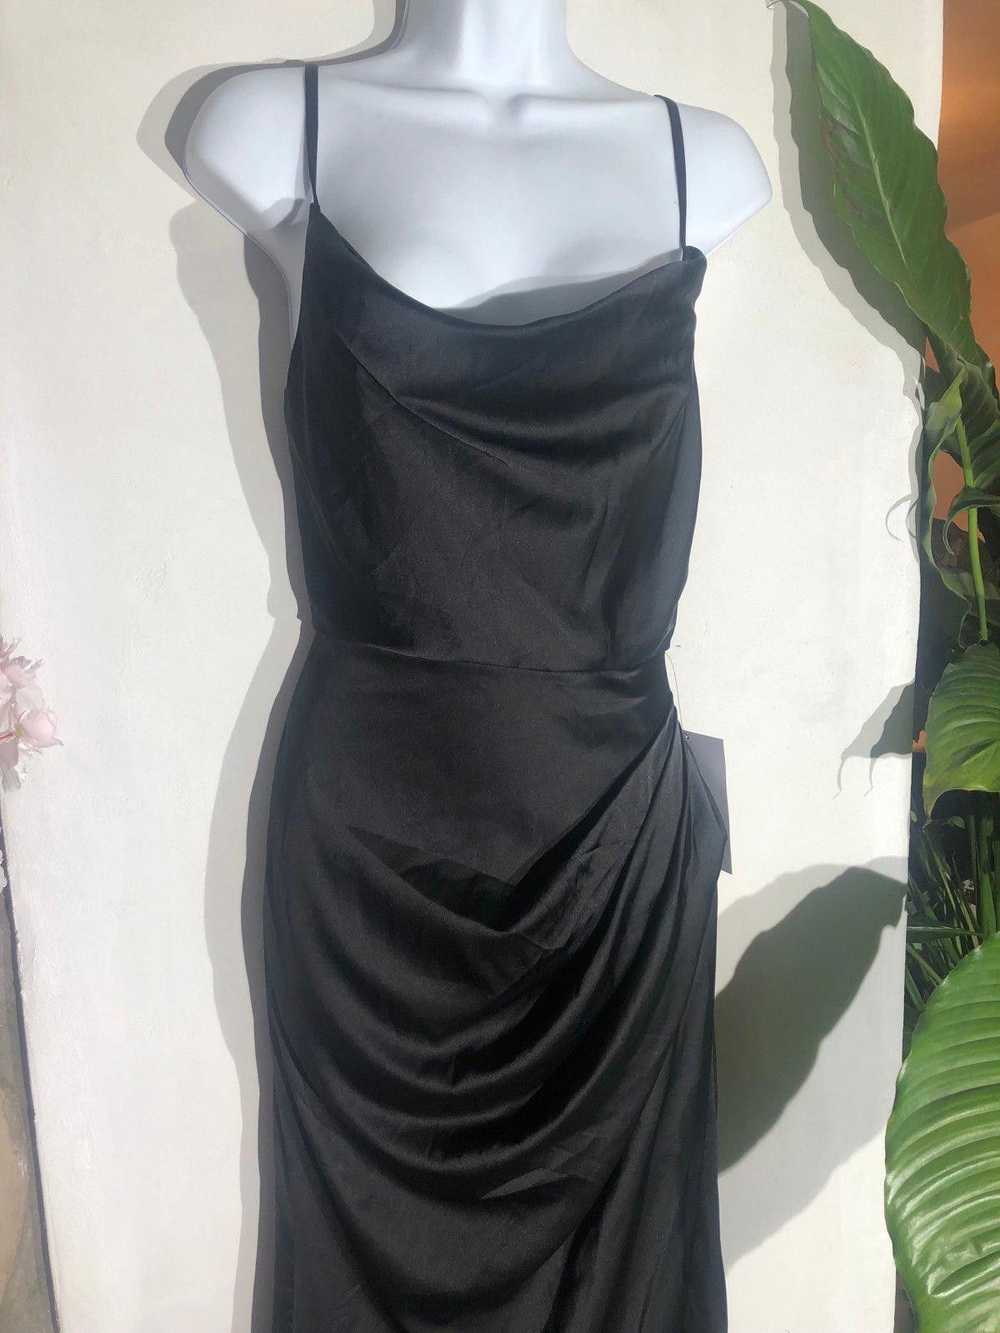 Designer Gown Dress hi-slit corset top by Moda Gl… - image 4